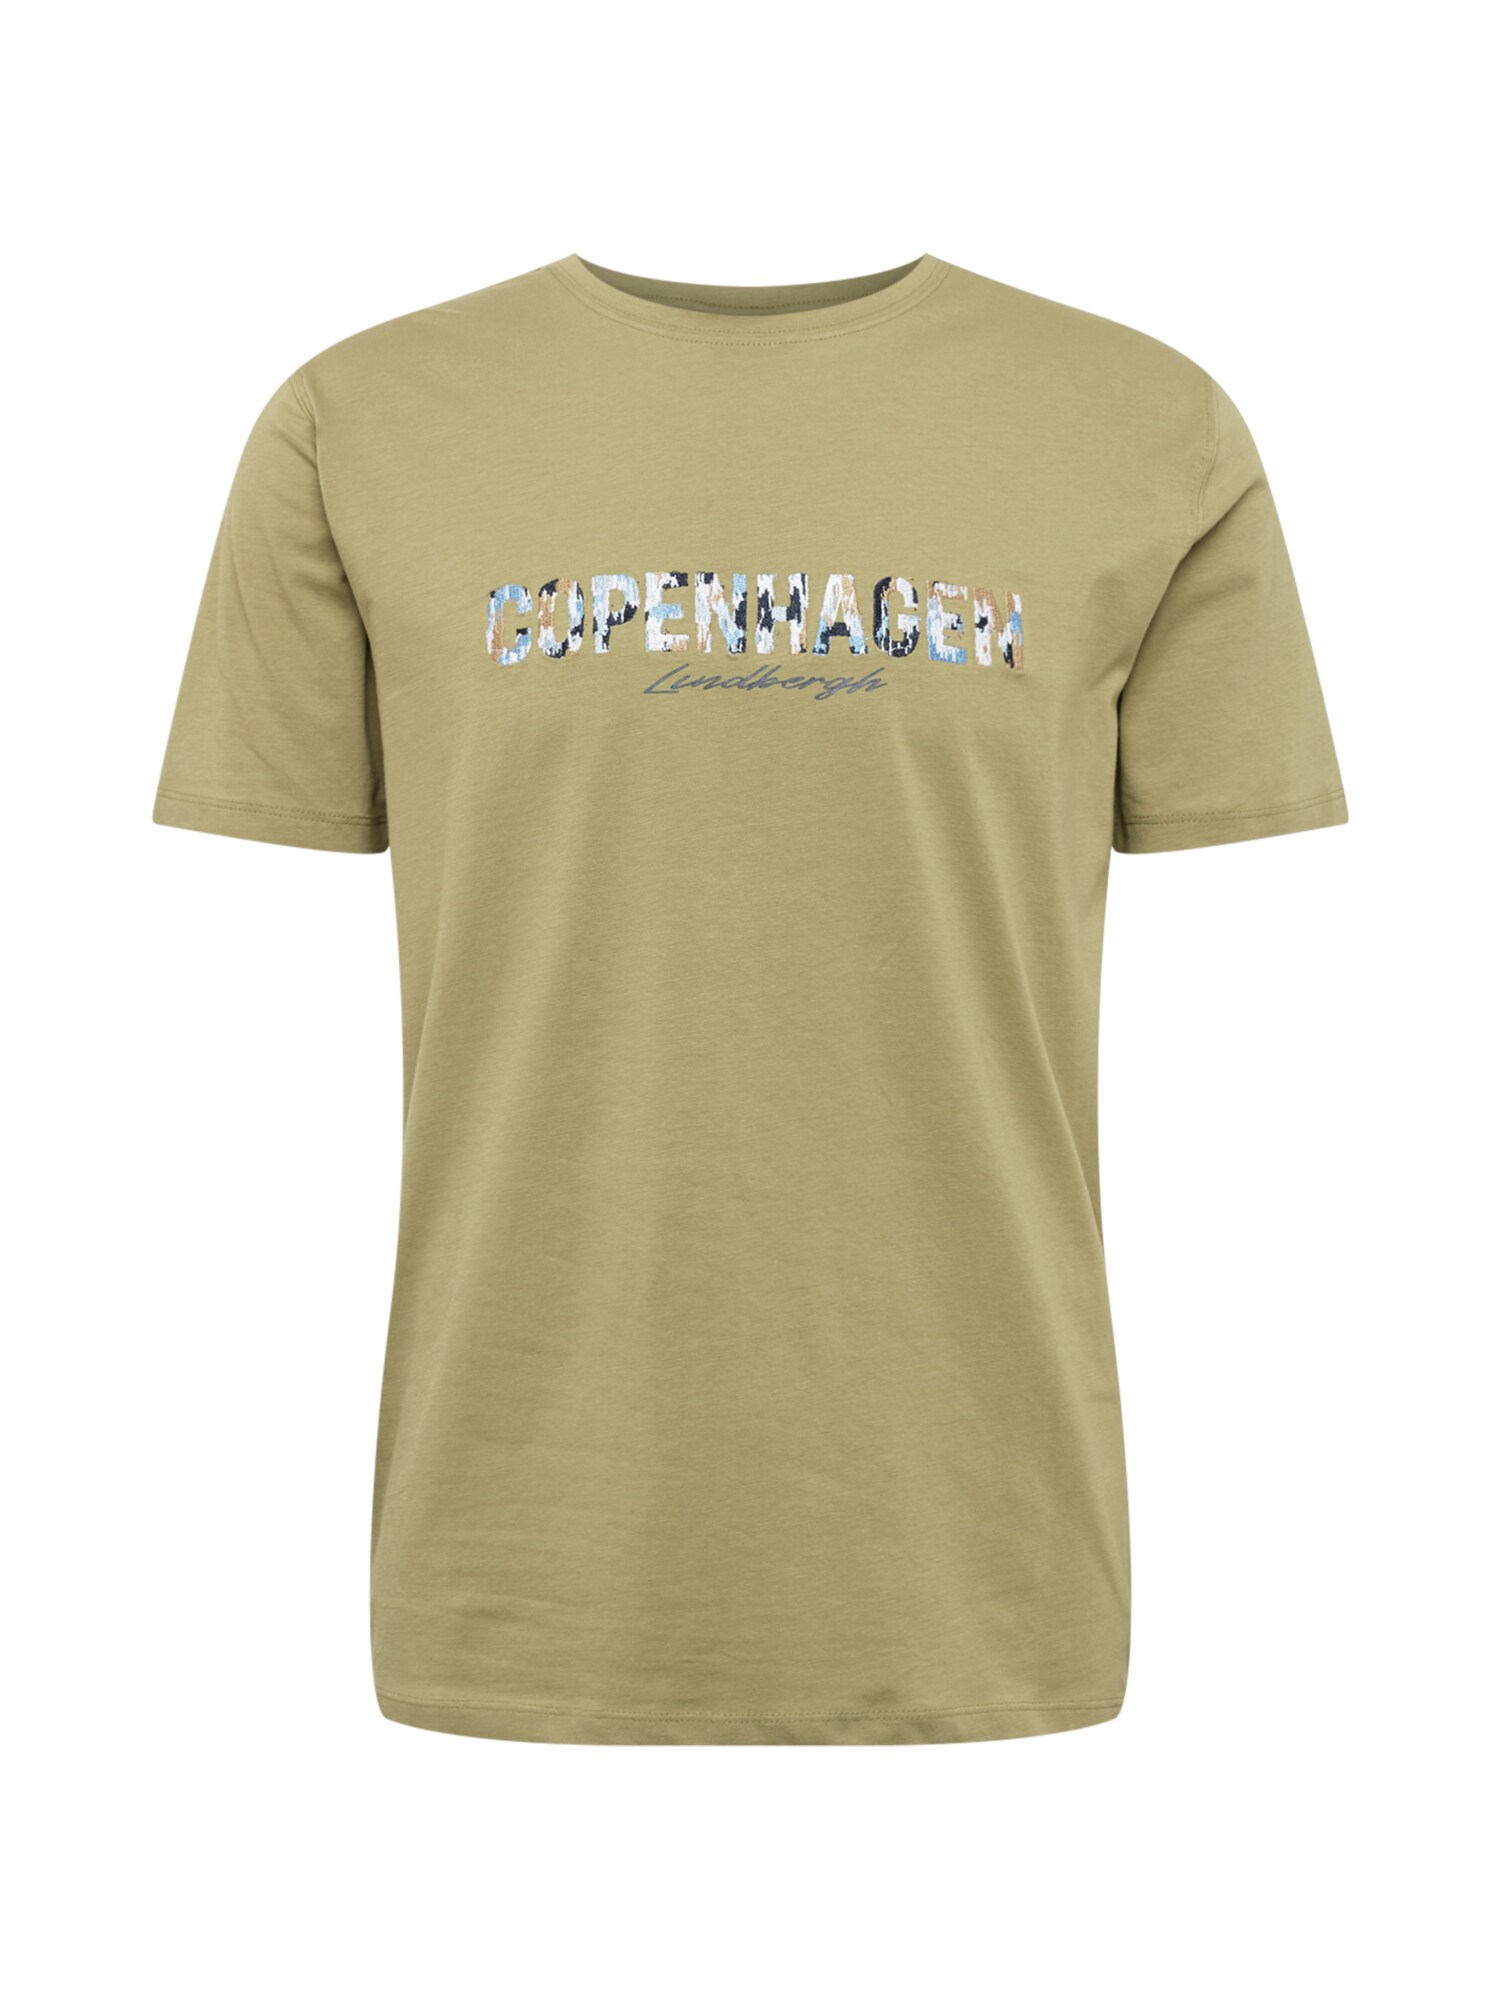 Shirt 'Copenhagen' lindbergh